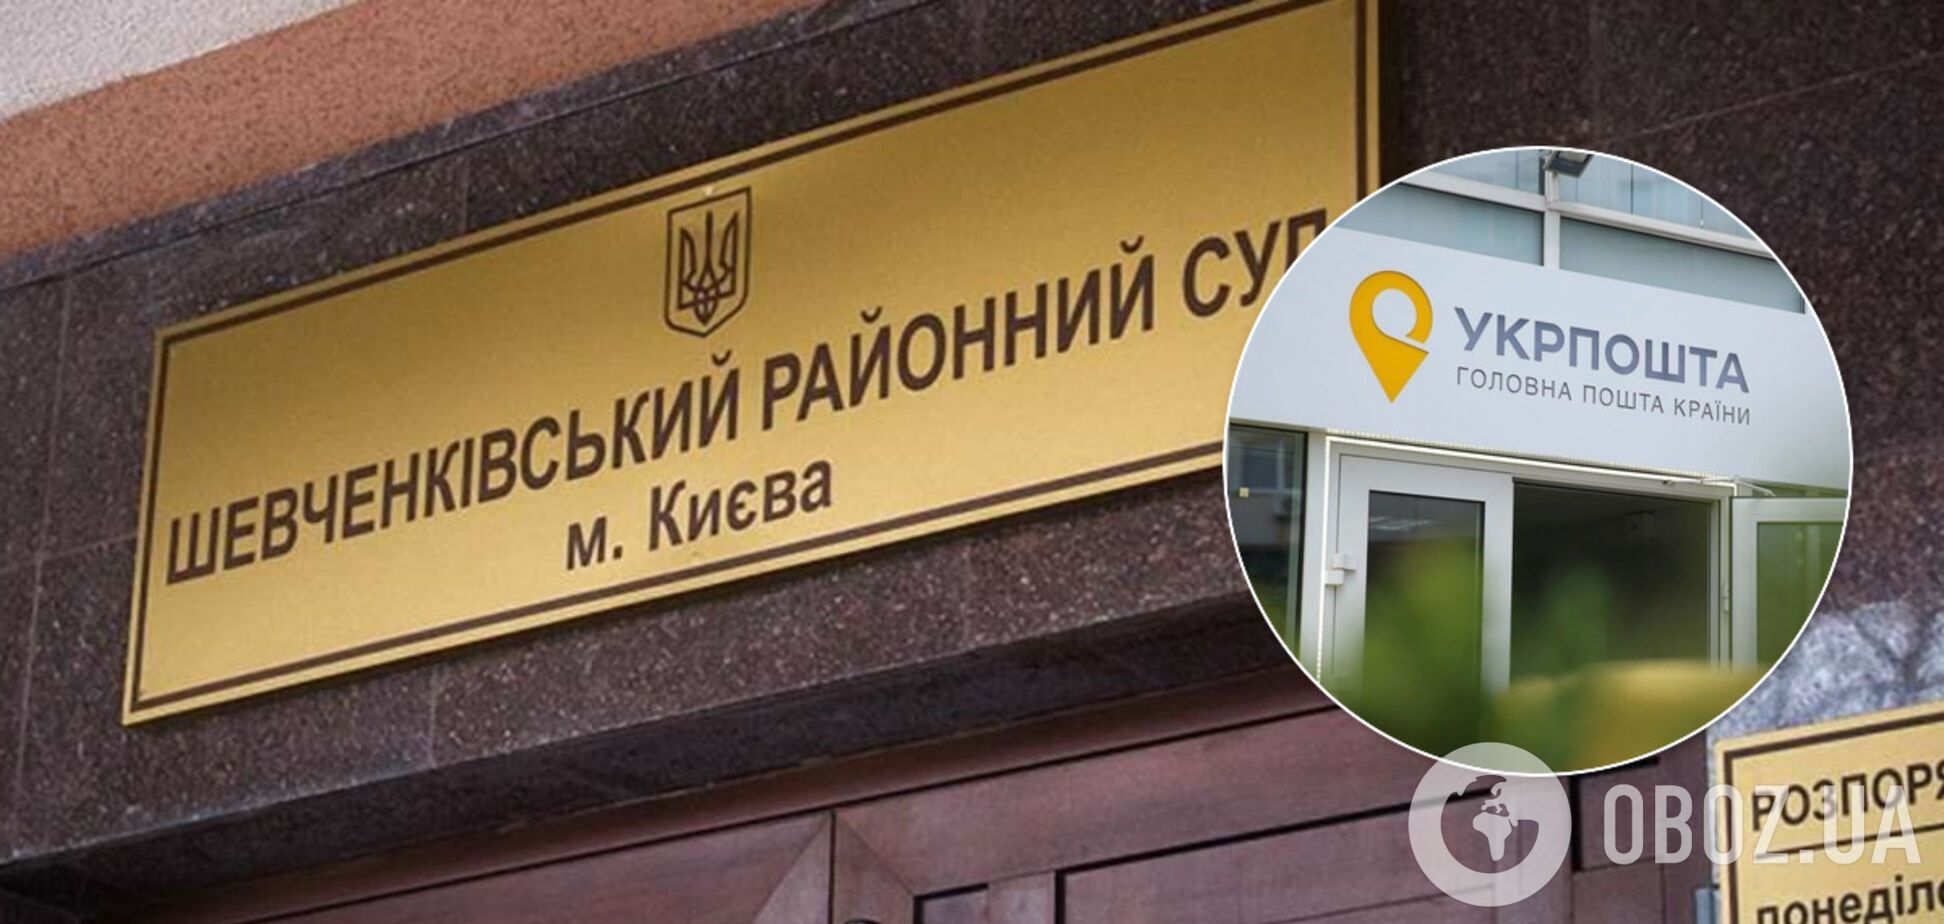 В украинских судах наметилась катастрофа из-за денег на отправку писем